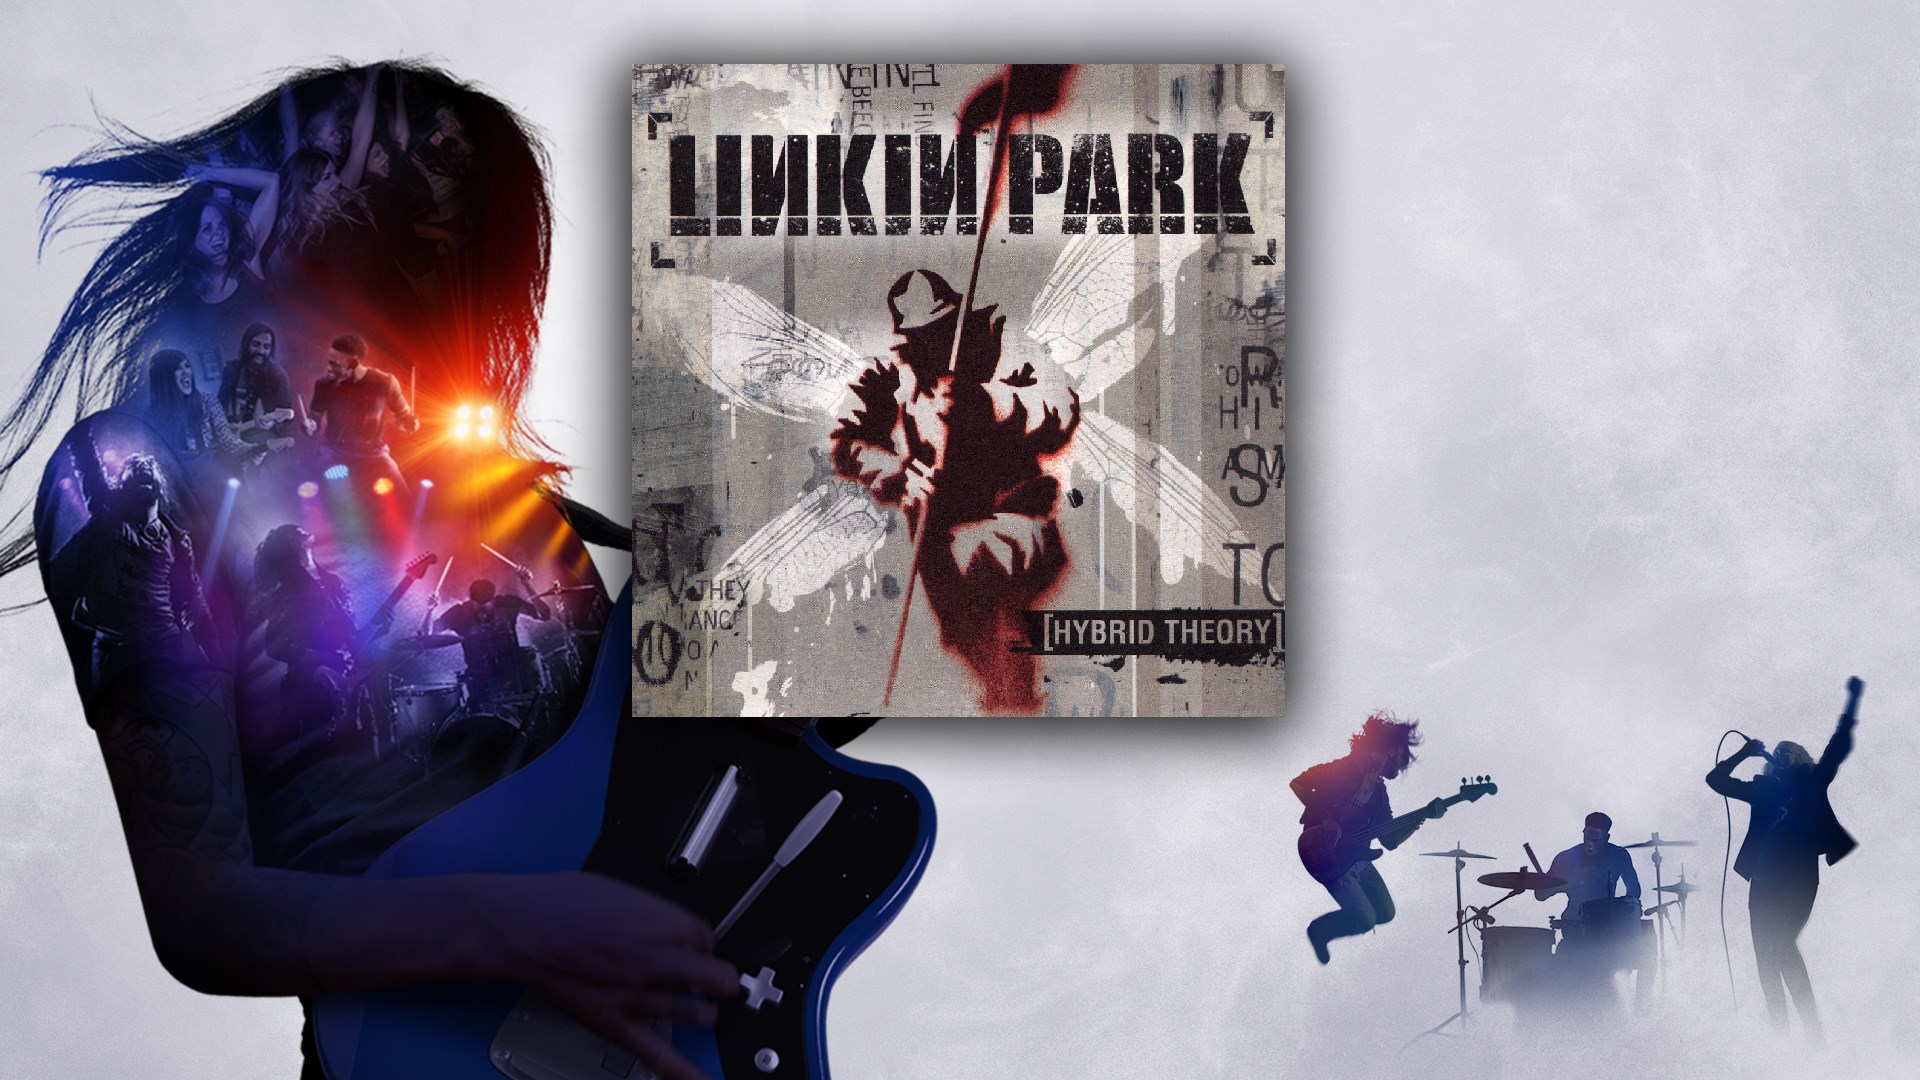 Linkin park one step. Linkin Park one Step closer. Hybrid Theory обложка. Linkin Park Hybrid Theory обложка альбома. Linkin Park one Step closer обложка.